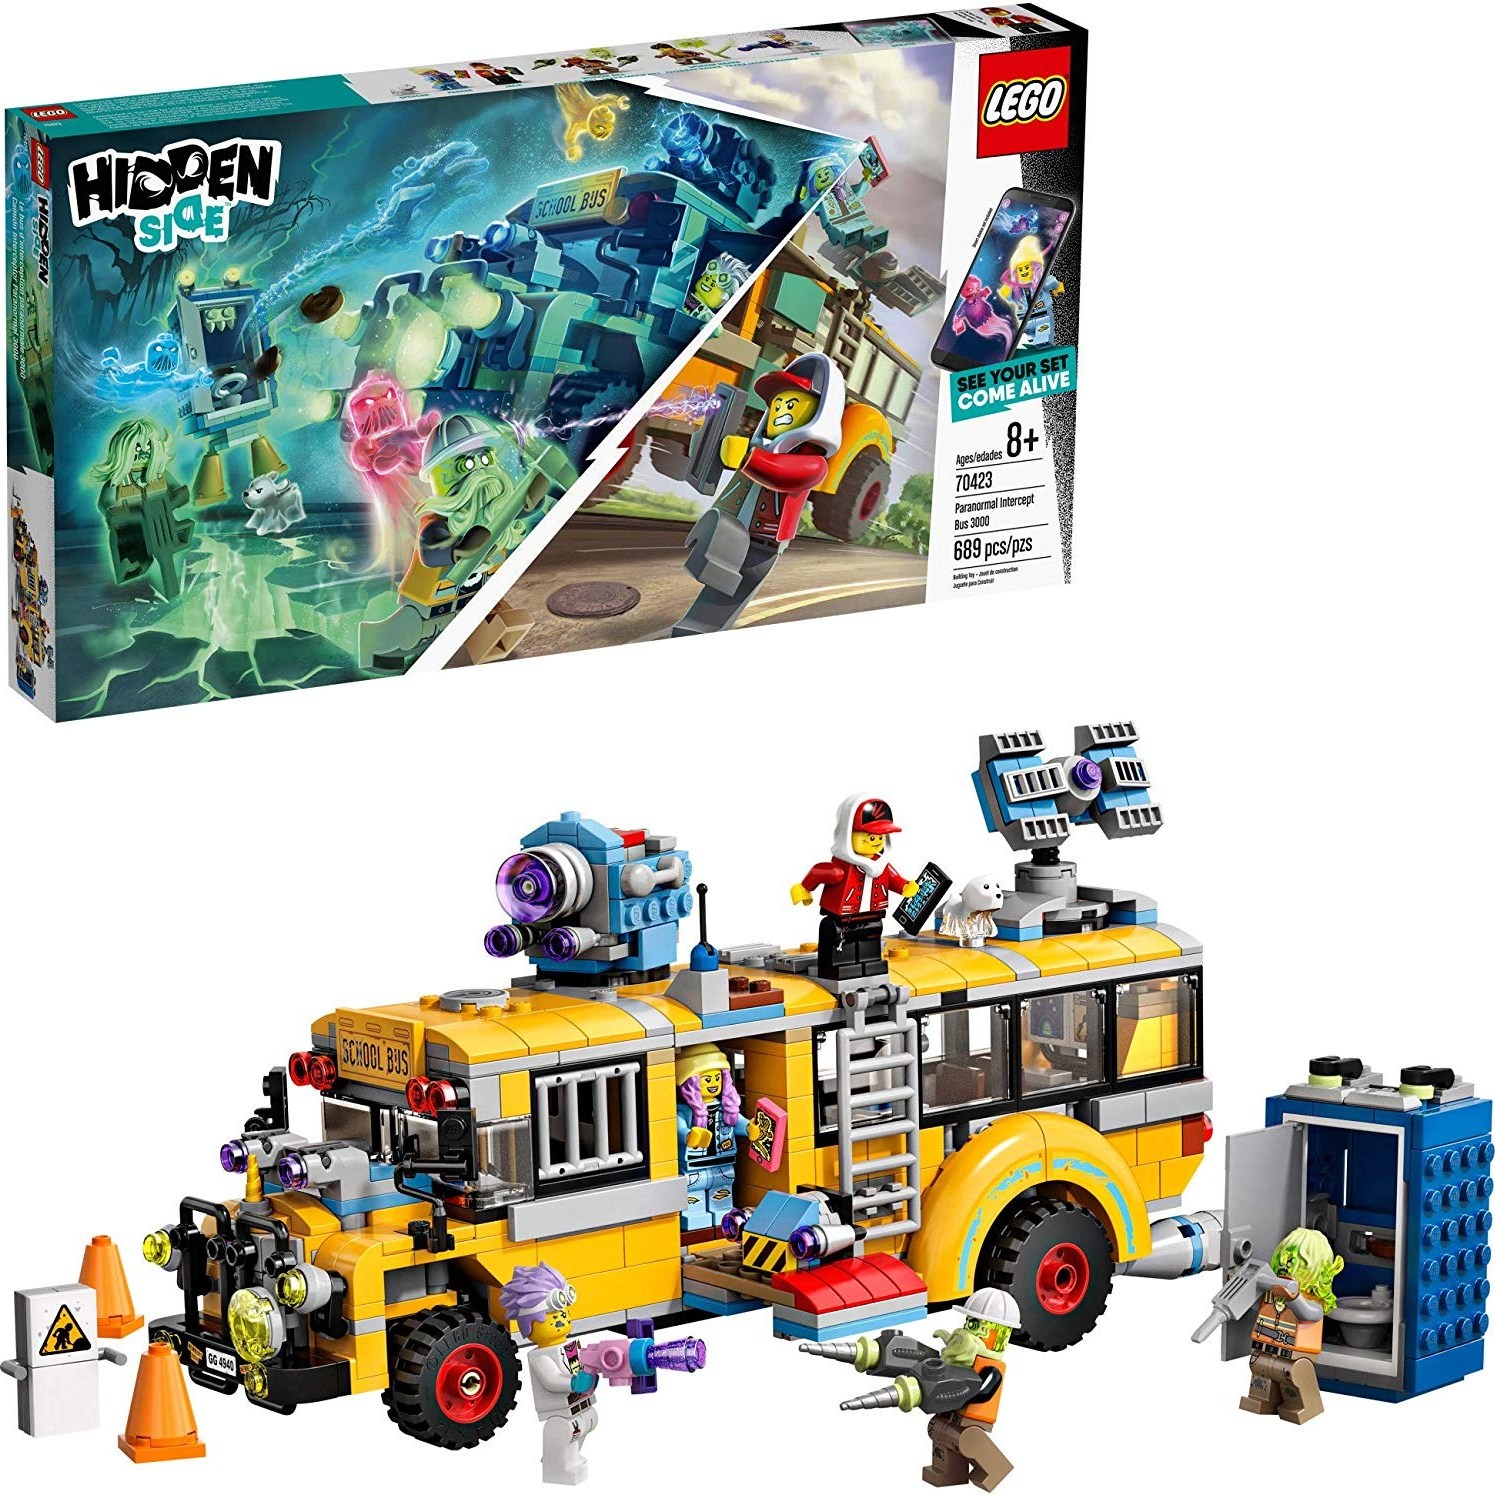 LEGO 레고 히든사이드 불가사의한 인터셉트 버스 3000 689 피스 70423, 단일제품 